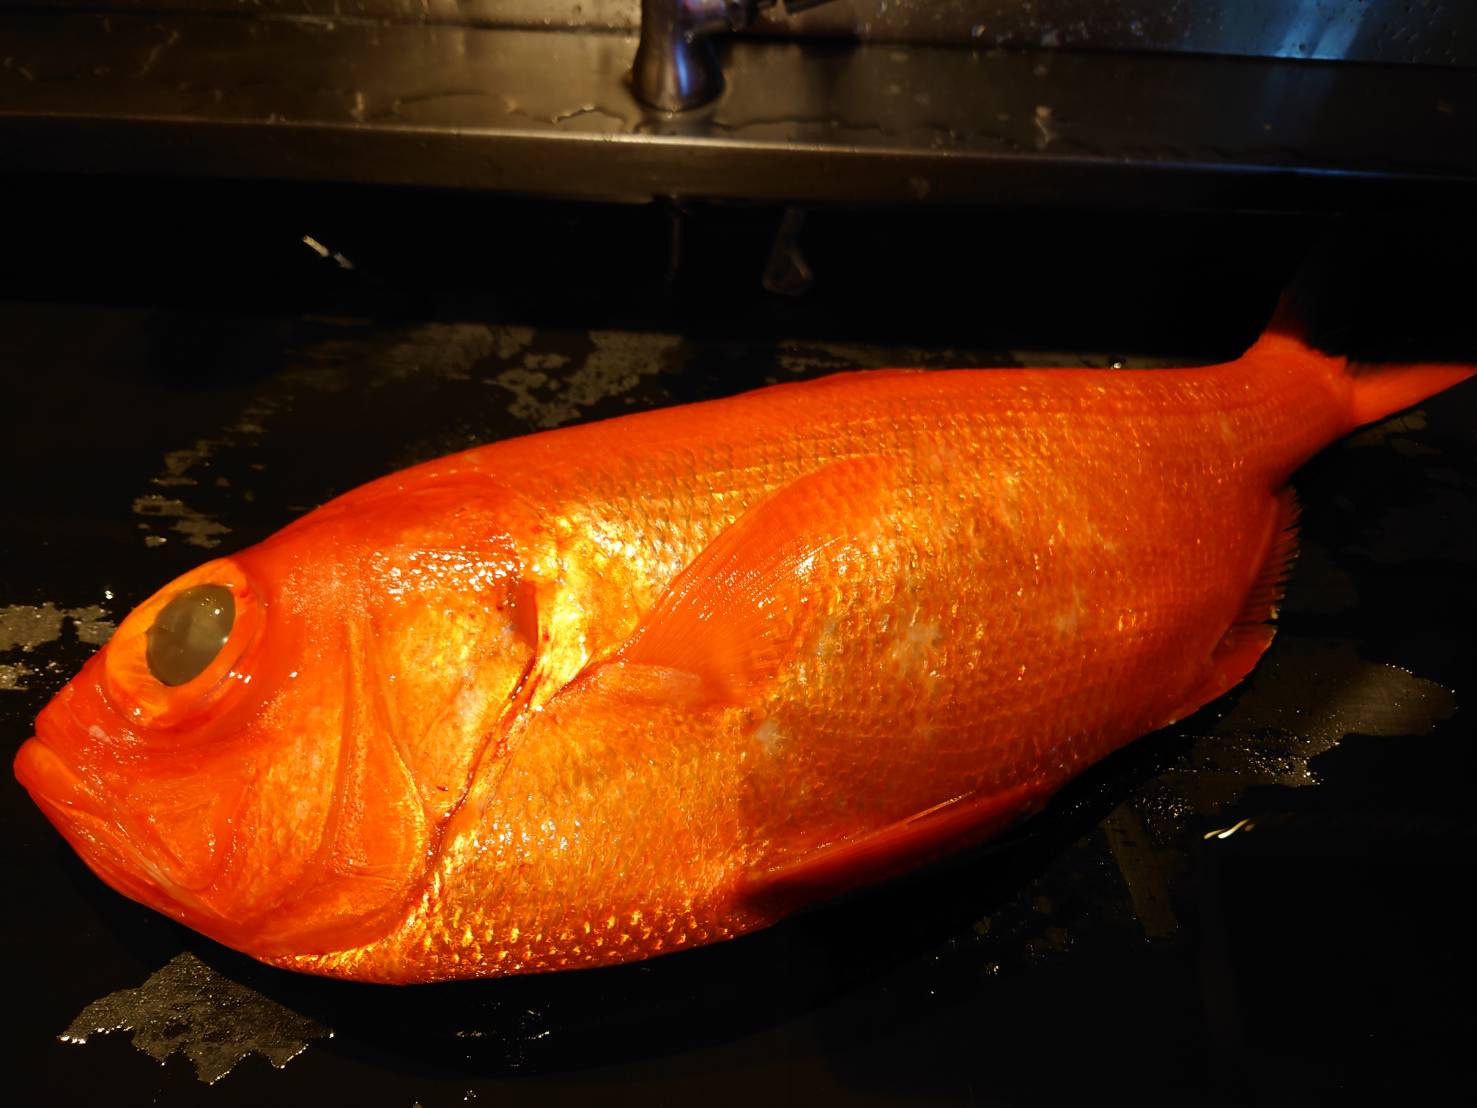 【日本料理みつわ】金目鯛・アラ<p>千葉県鴨川より、デブチーニと呼ばれる金目鯛、 静岡県御前崎より、5.6㎏の大きなアラを入荷いたしました。 どちらも、目利きのスペシャリスト沢井氏による、 一流の眼差しで厳選された魚でございます。</p>
